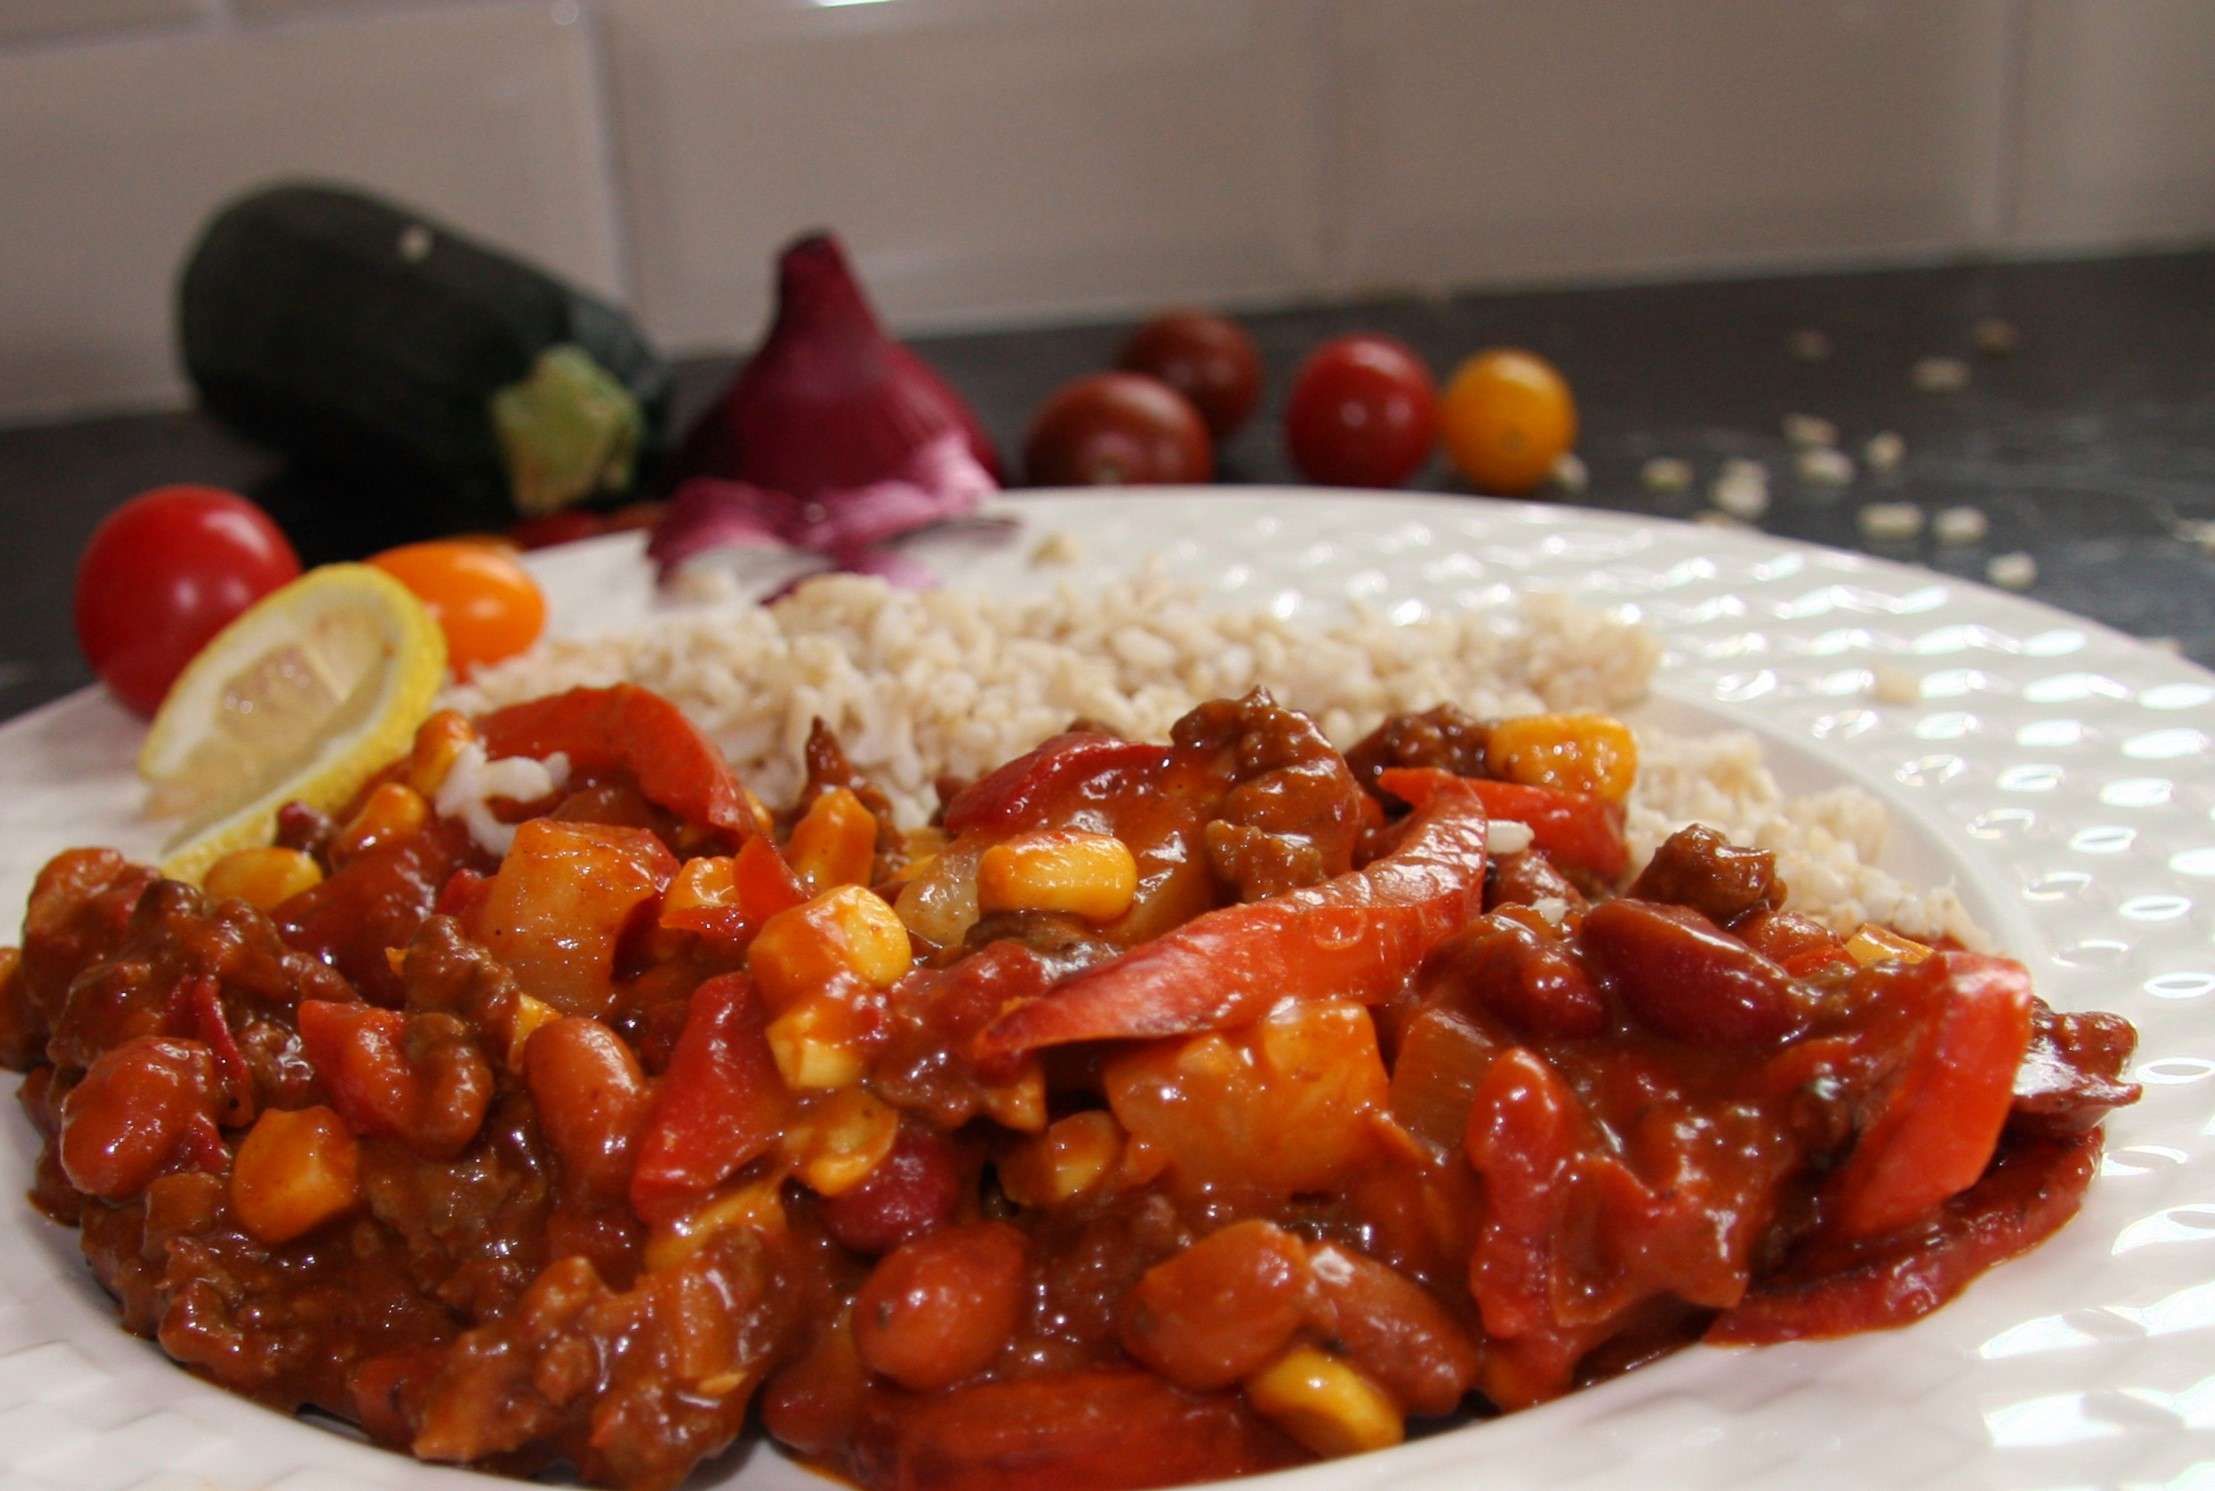 Recept: chili con carne basissaus met runder gehakt